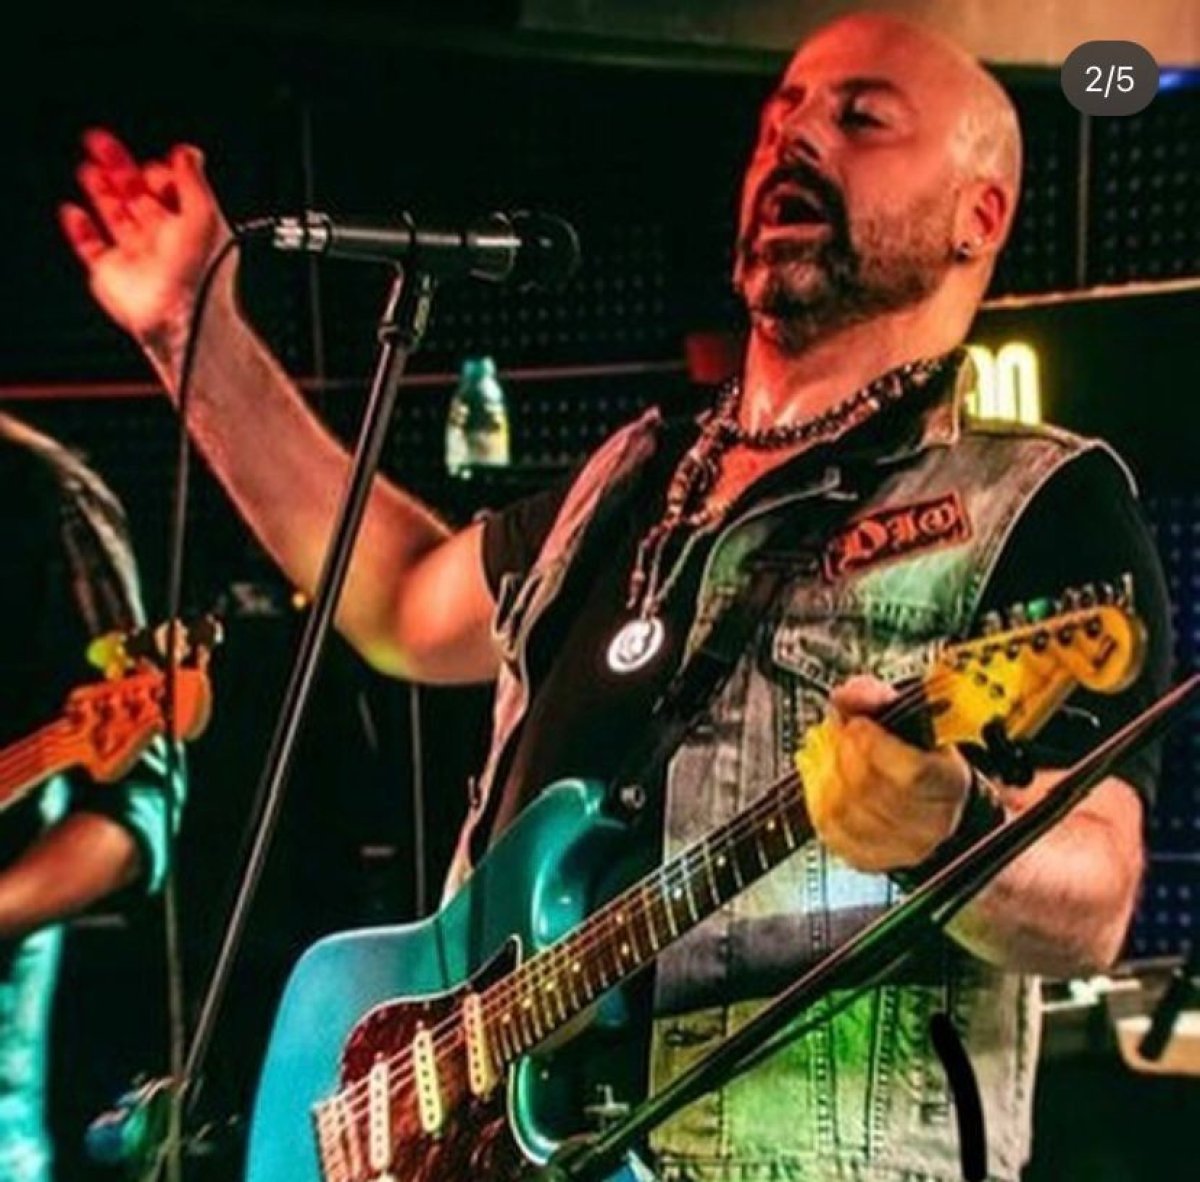 Ankara’da şarkıyı bilmediği gerekçesiyle müzisyeni öldürdüler #1